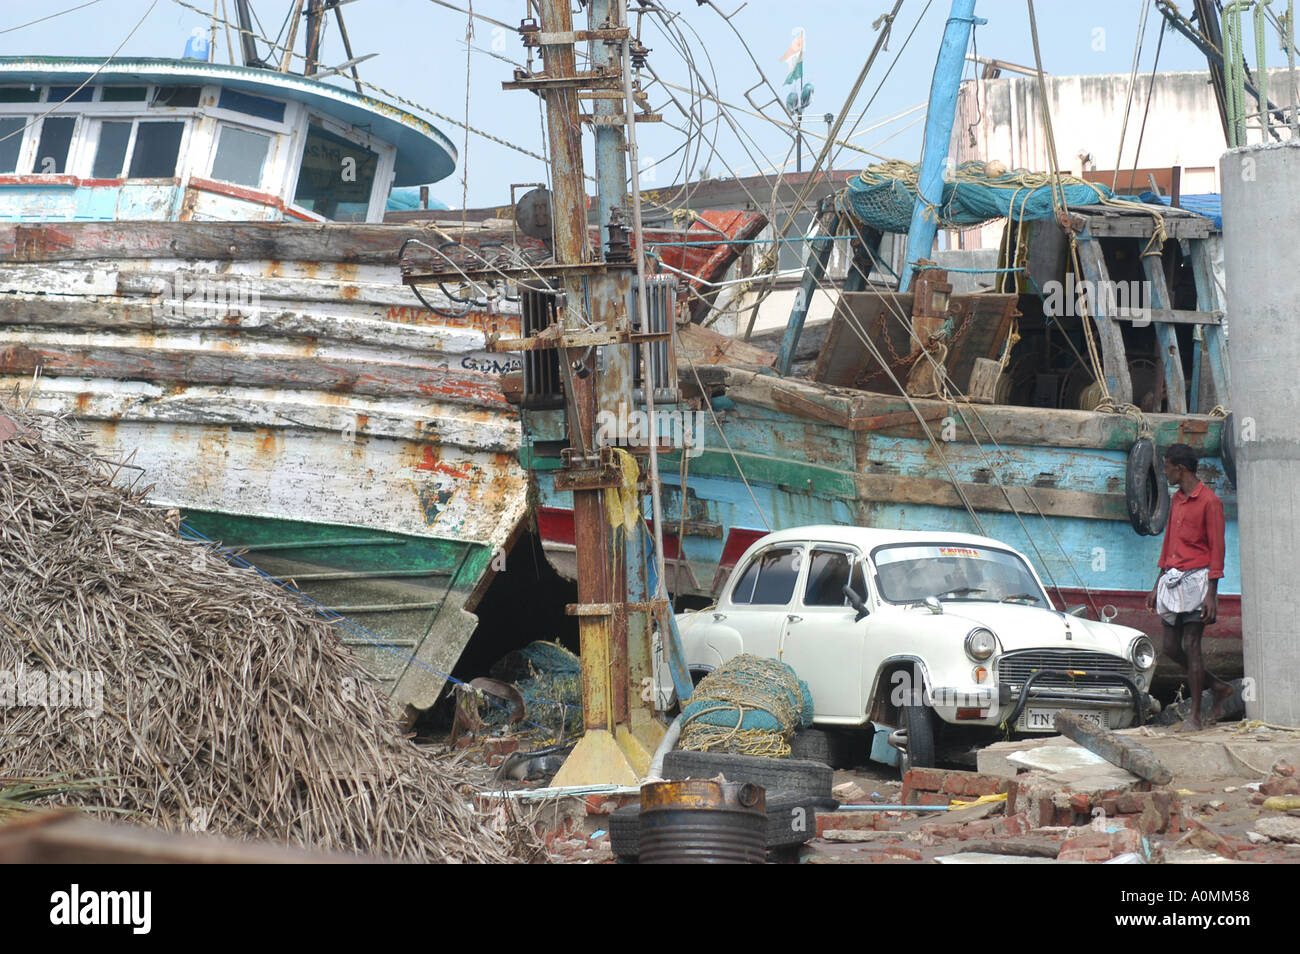 Dommages aux bateaux par des catastrophes naturelles Tsunami séisme sur mer Nagapattinum Velankanni Tamil Nadu Inde Océan Indien Asie Banque D'Images